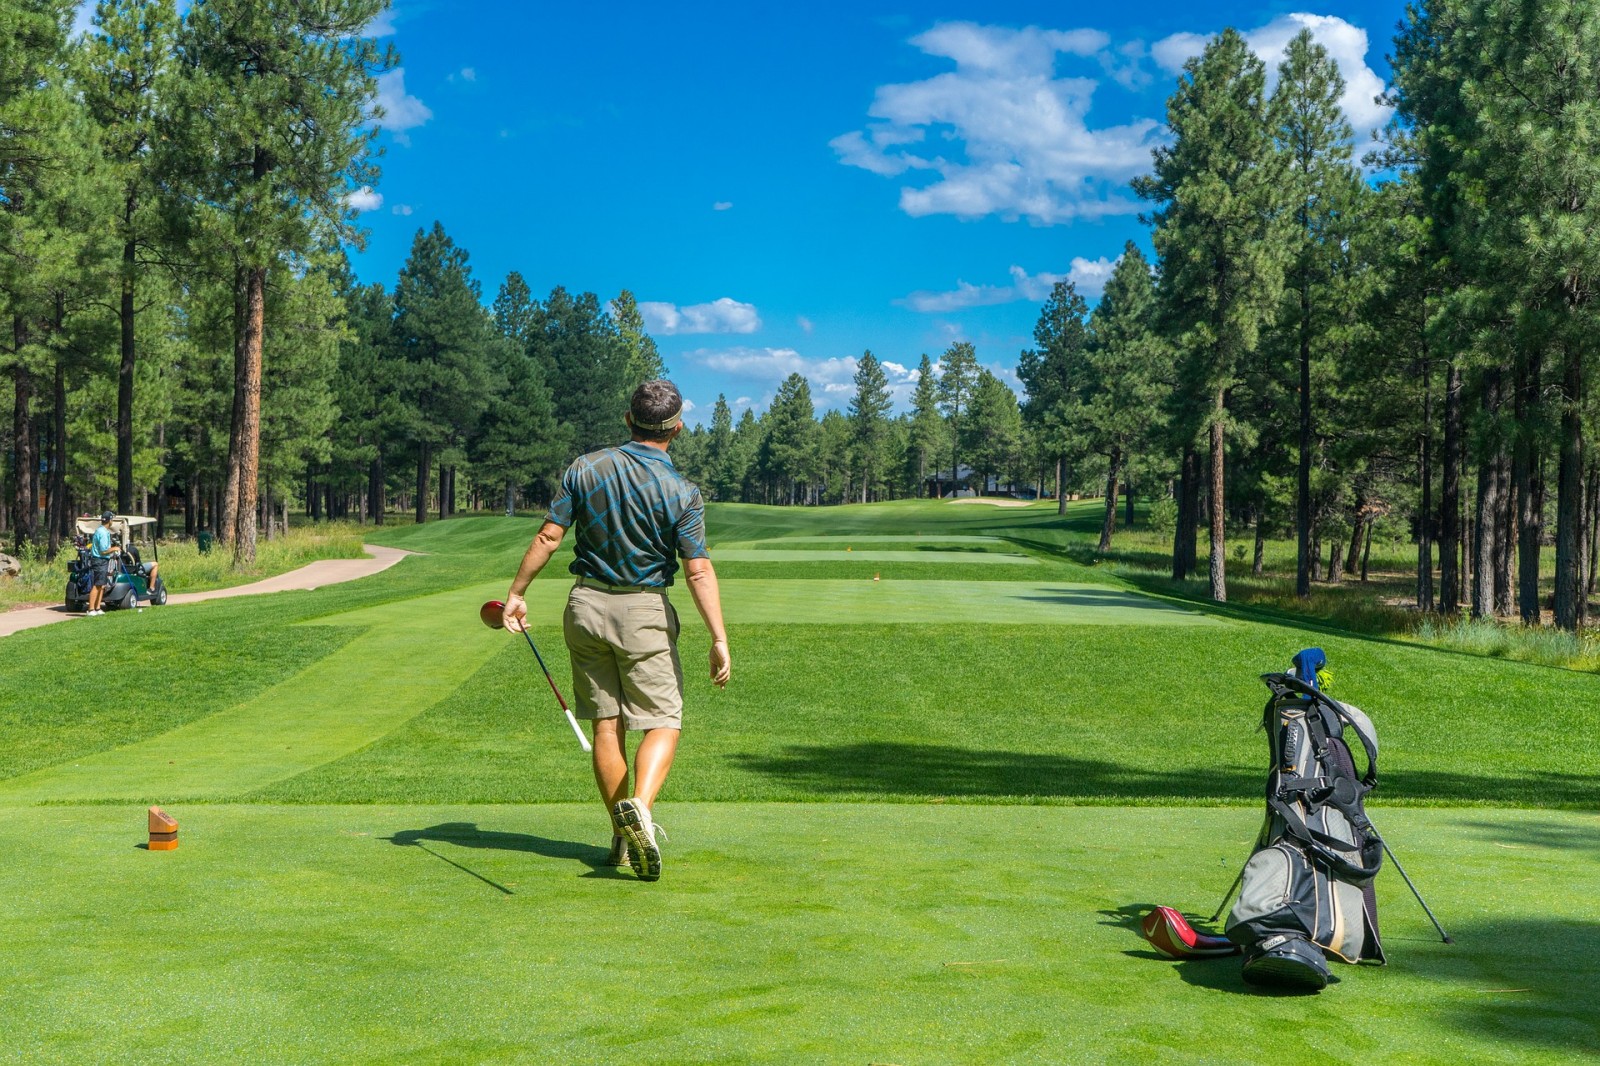 El equipo de golf que necesita marcará una gran diferencia en el campo - Noticias de golf |  Revista de golf